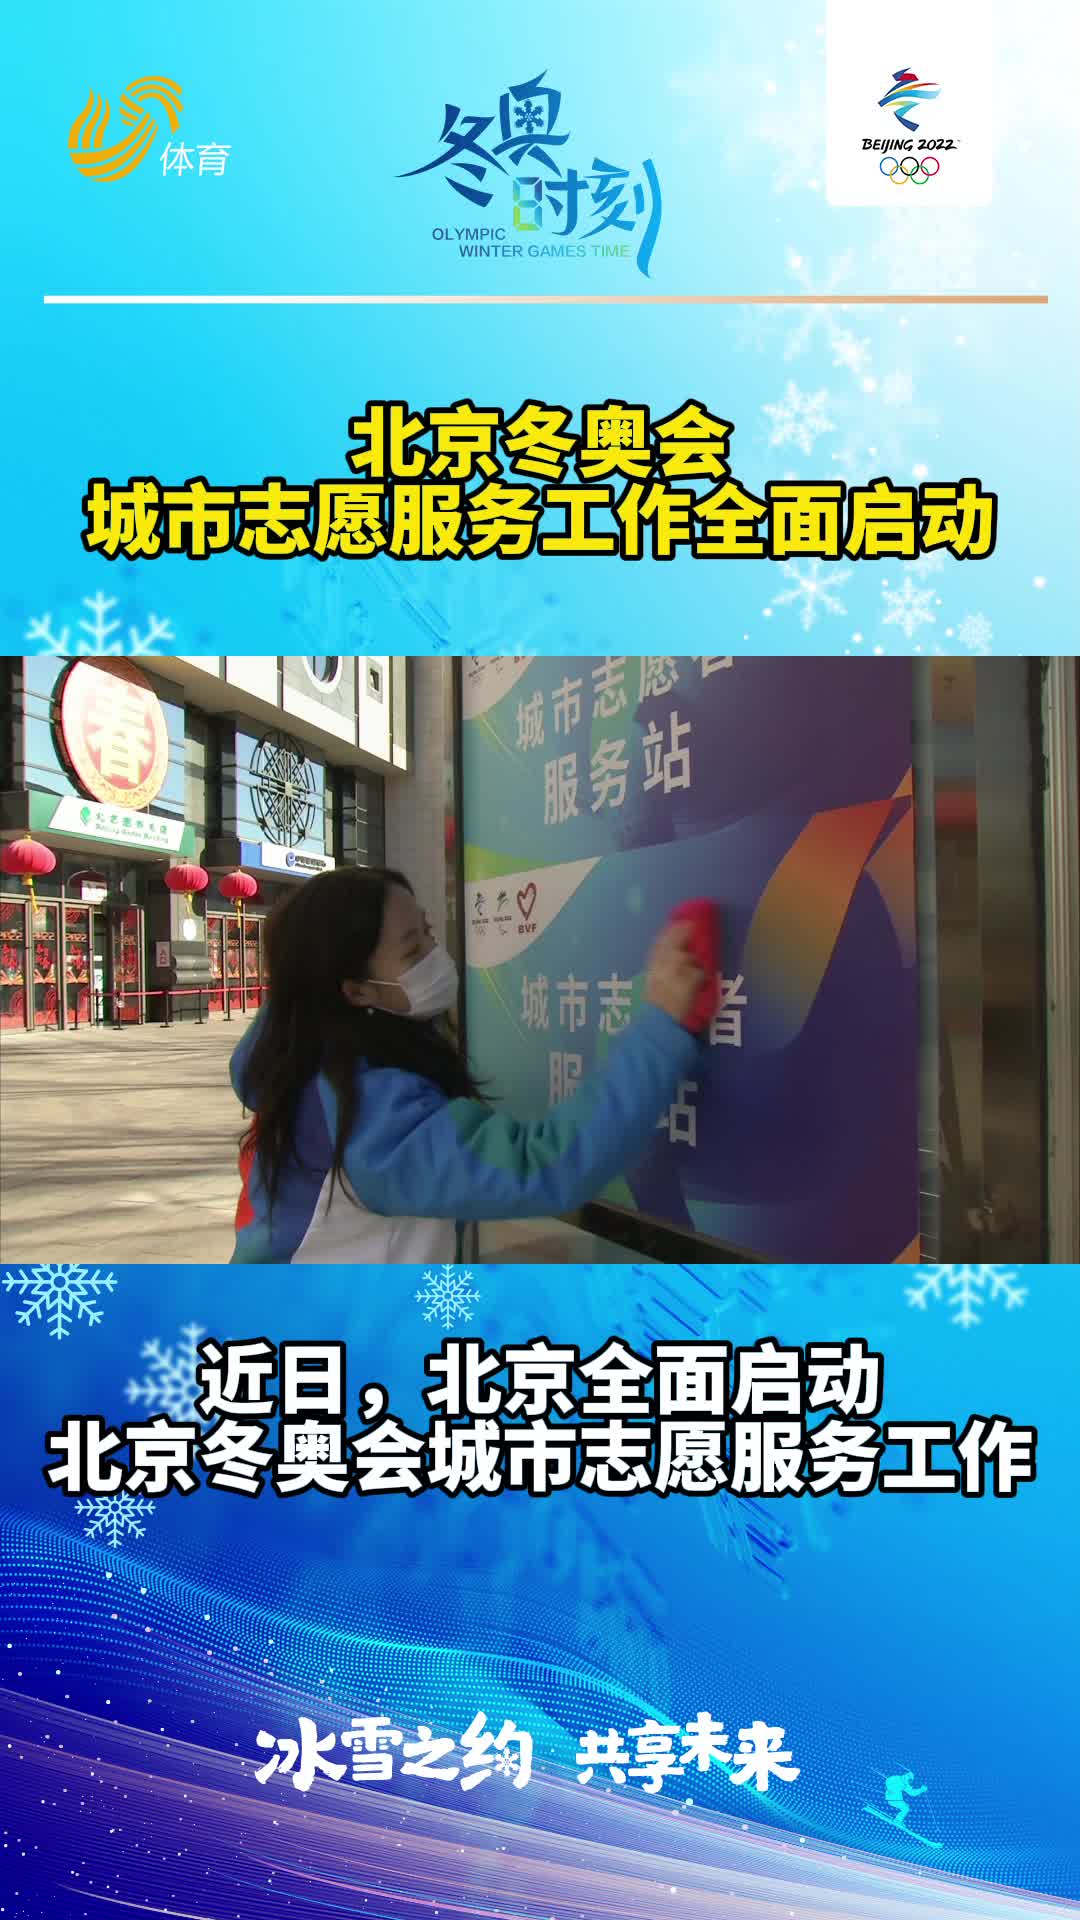 “1分钟了解冬奥会”： 中国队在历届冬奥会获得了多少金牌_哔哩哔哩_bilibili